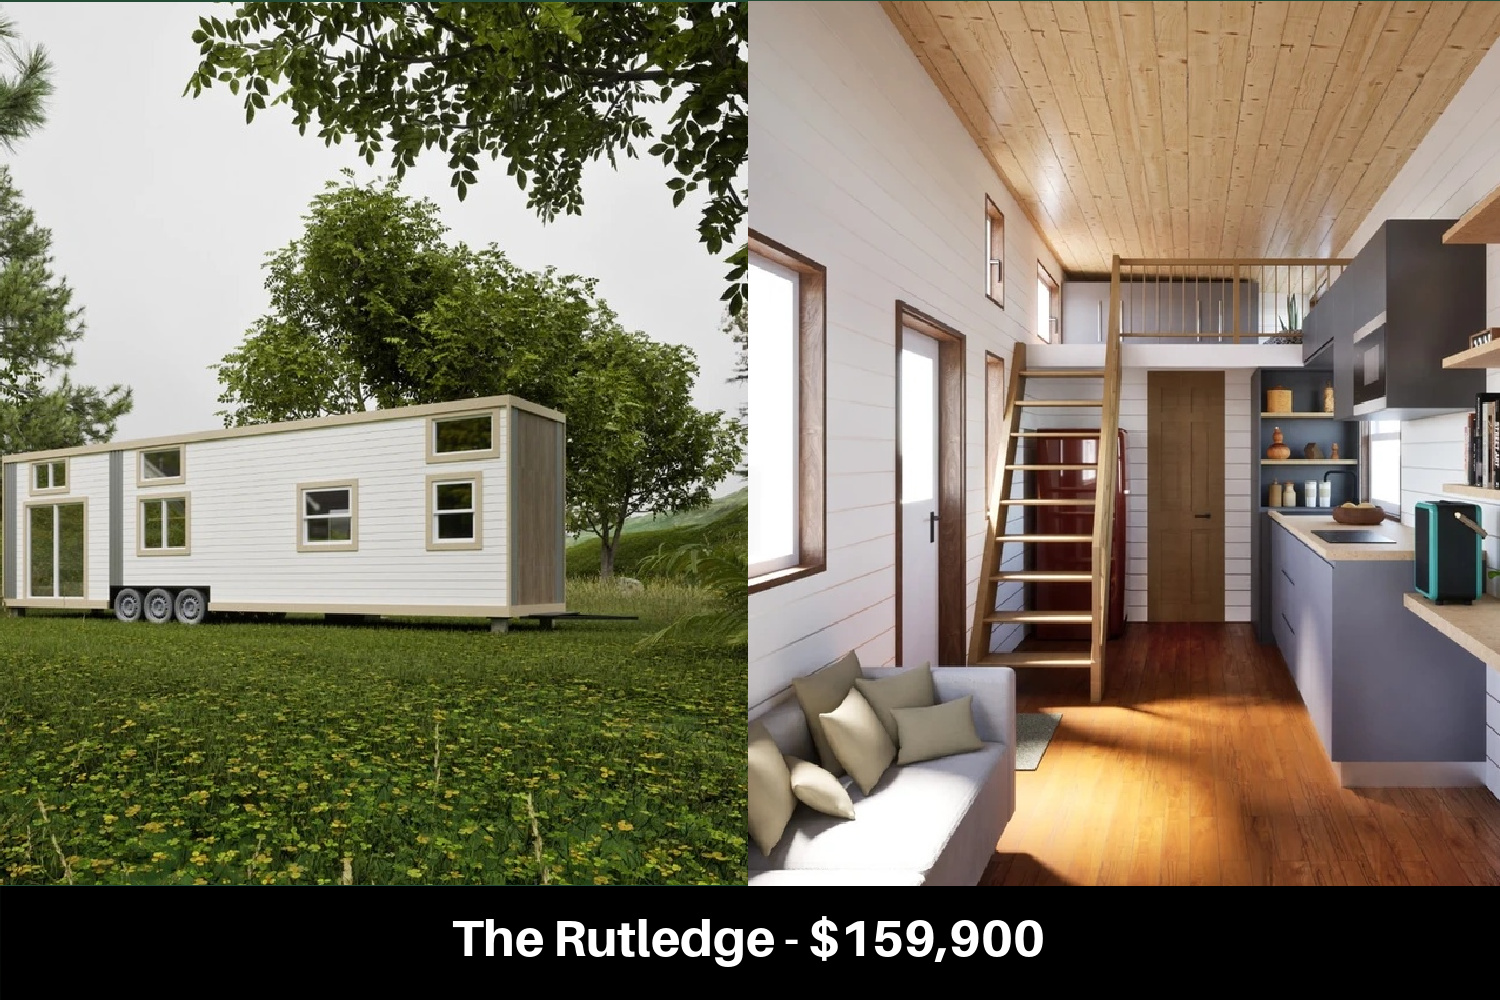 The Rutledge - $159,900